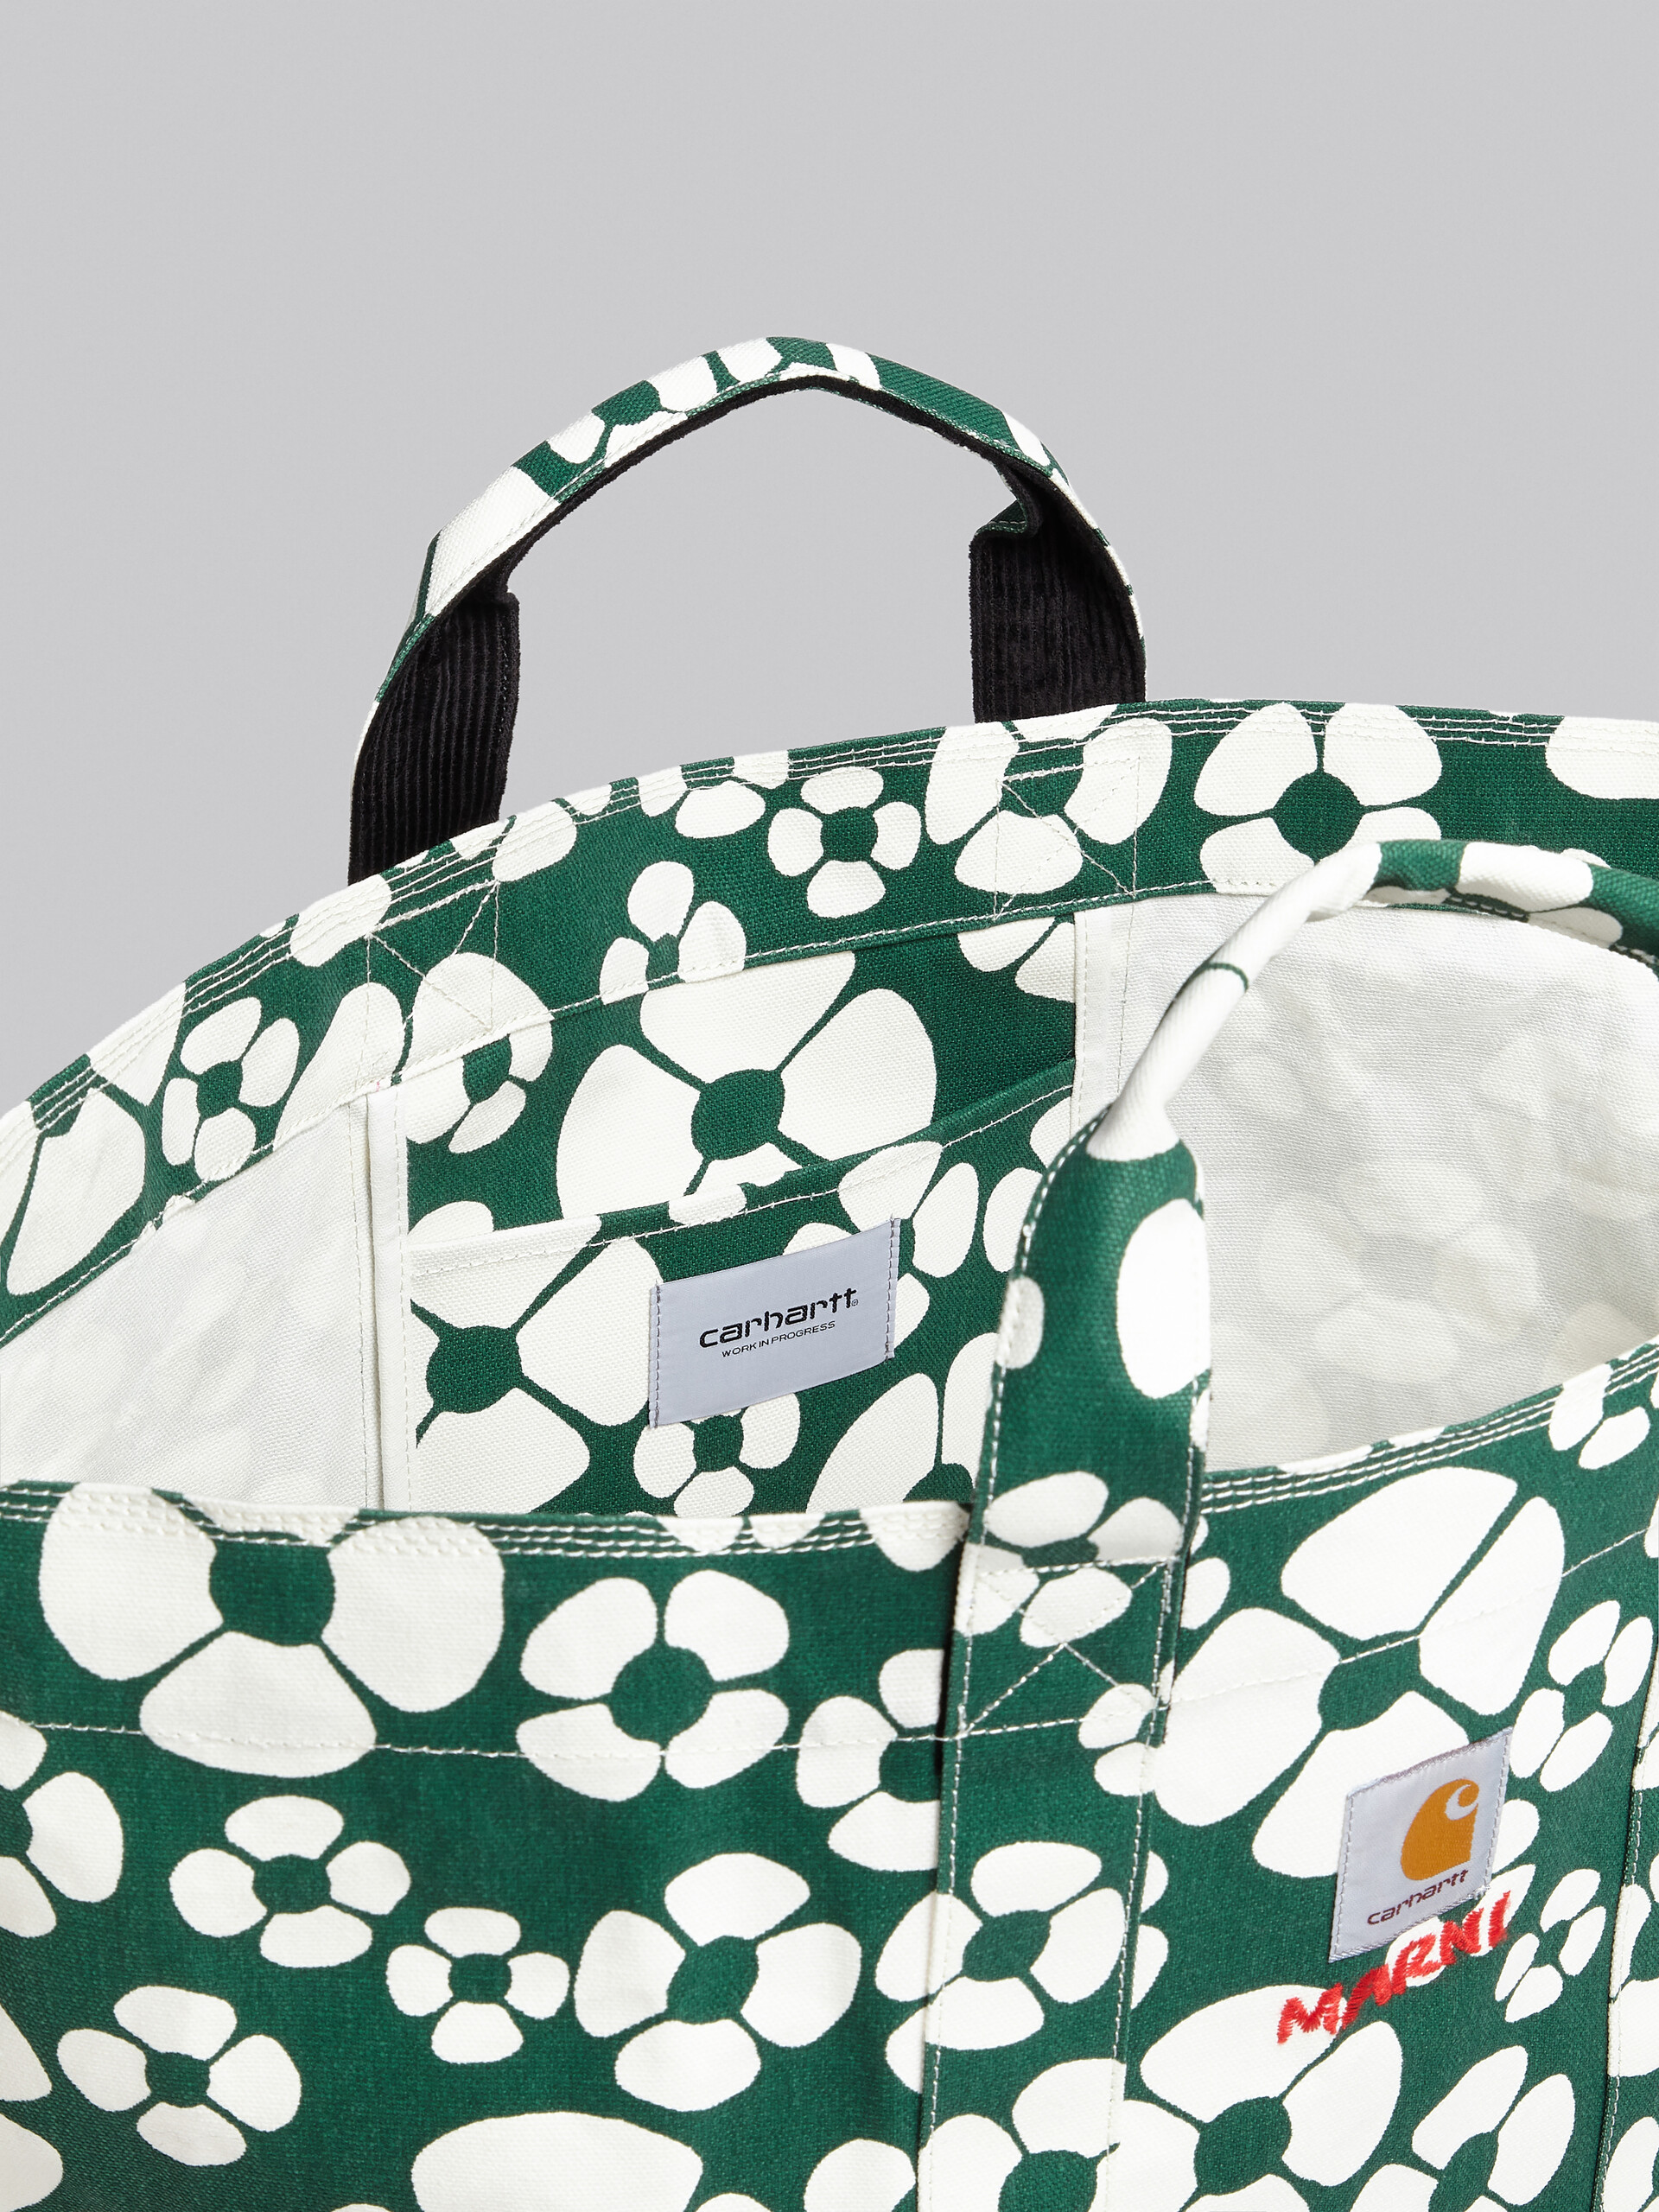 MARNI x CARHARTT WIP - green shopper - Shopping Bags - Image 4